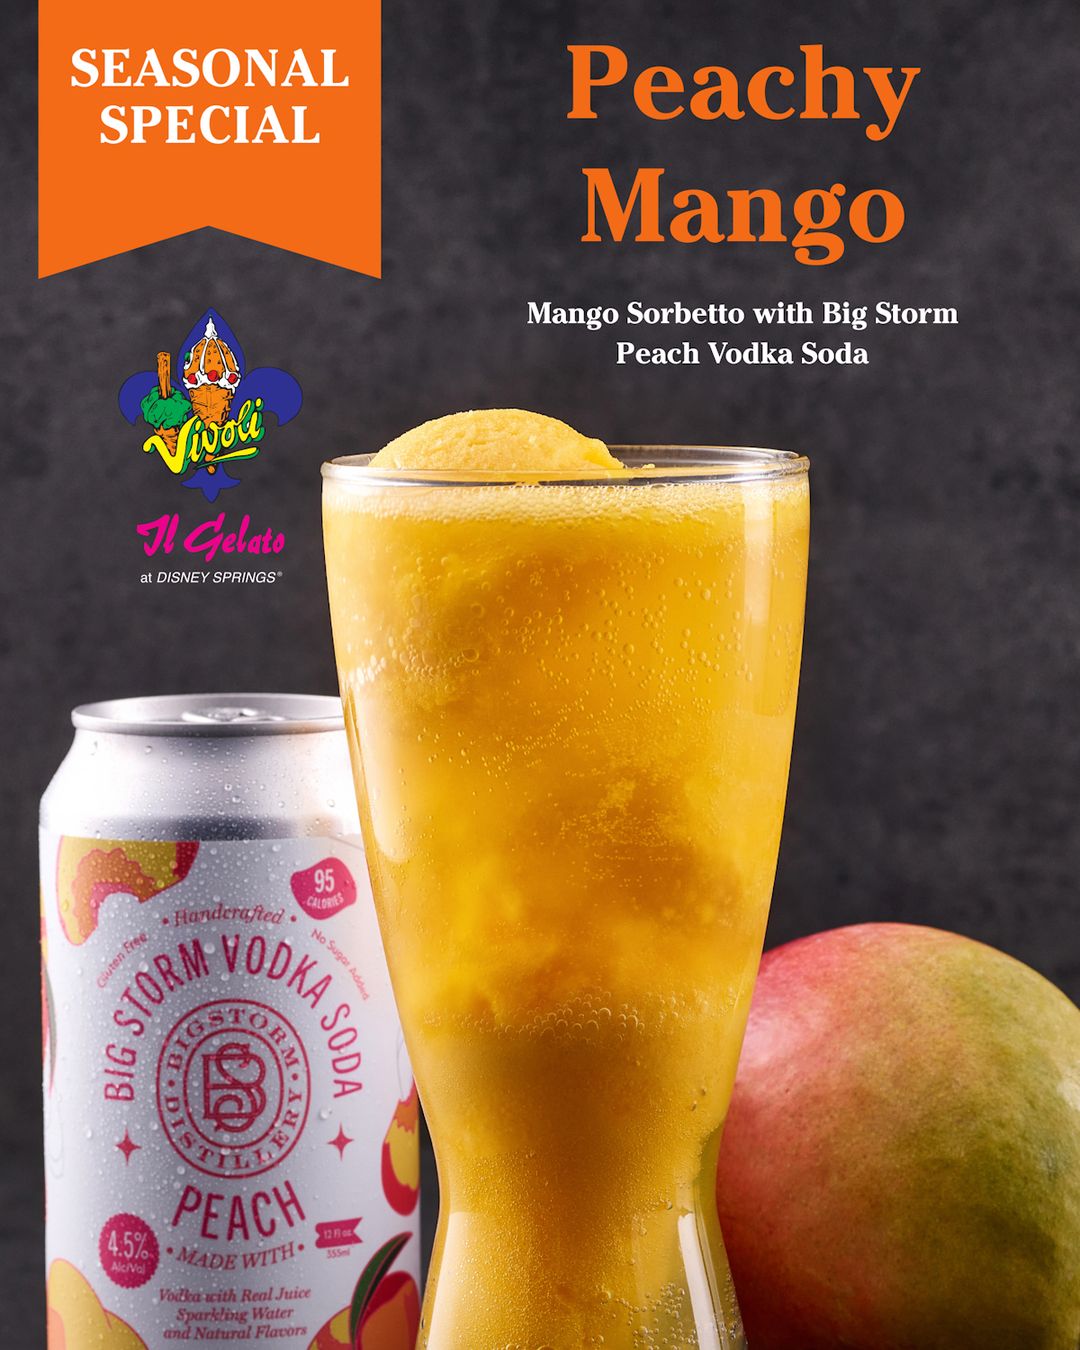 Peachy Mango